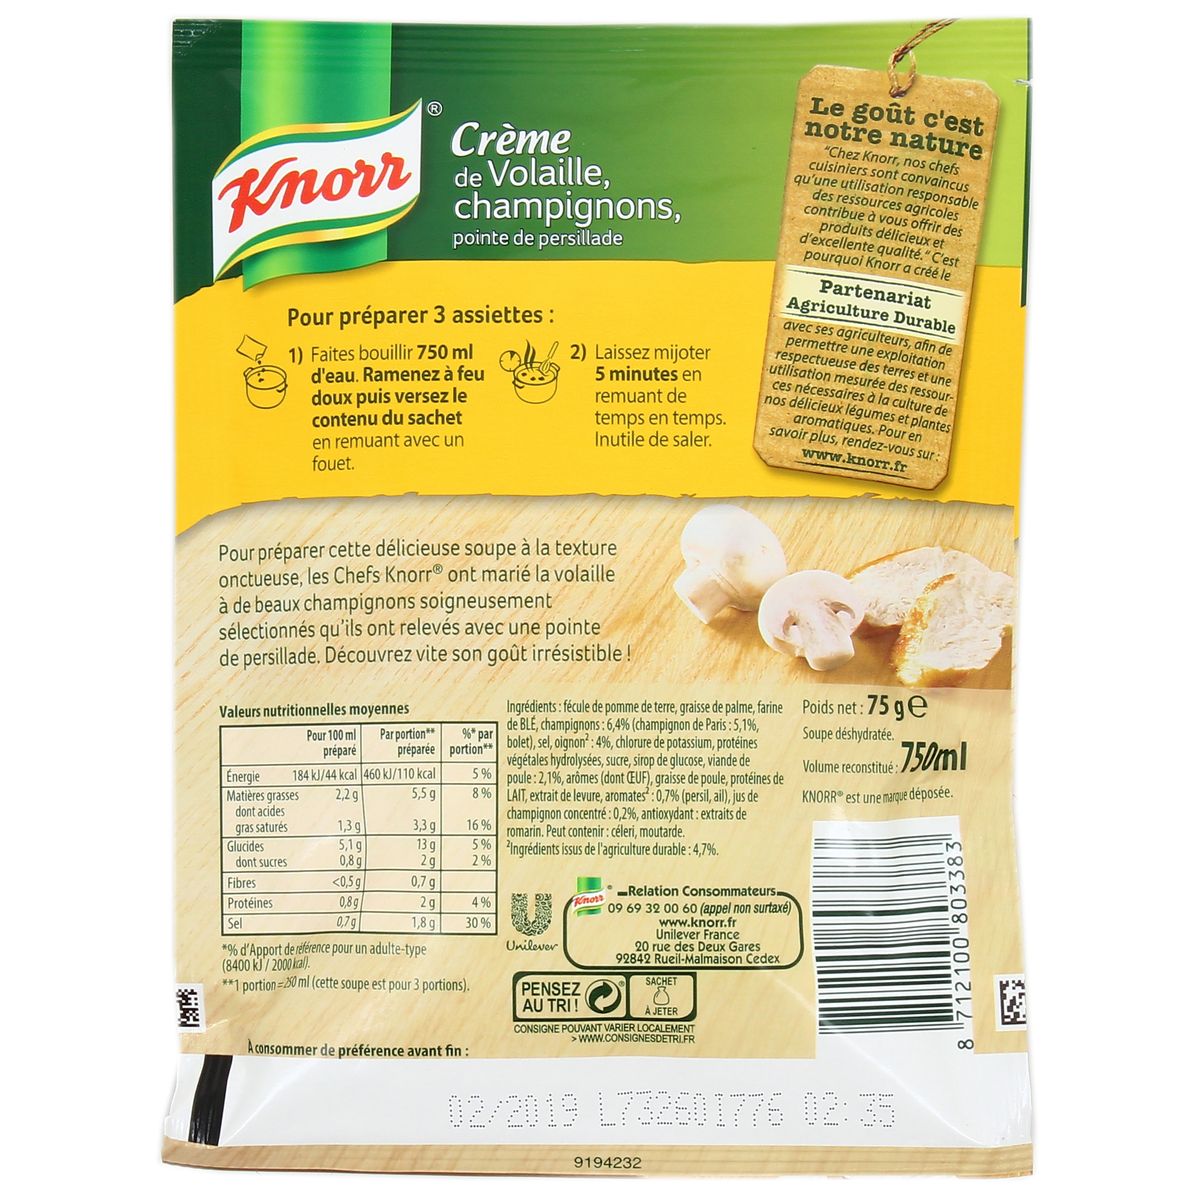 Les soupes déshydratées Knorr : quelle qualité nutritionnelle ? – Unilever  Pro Nutrition Sante